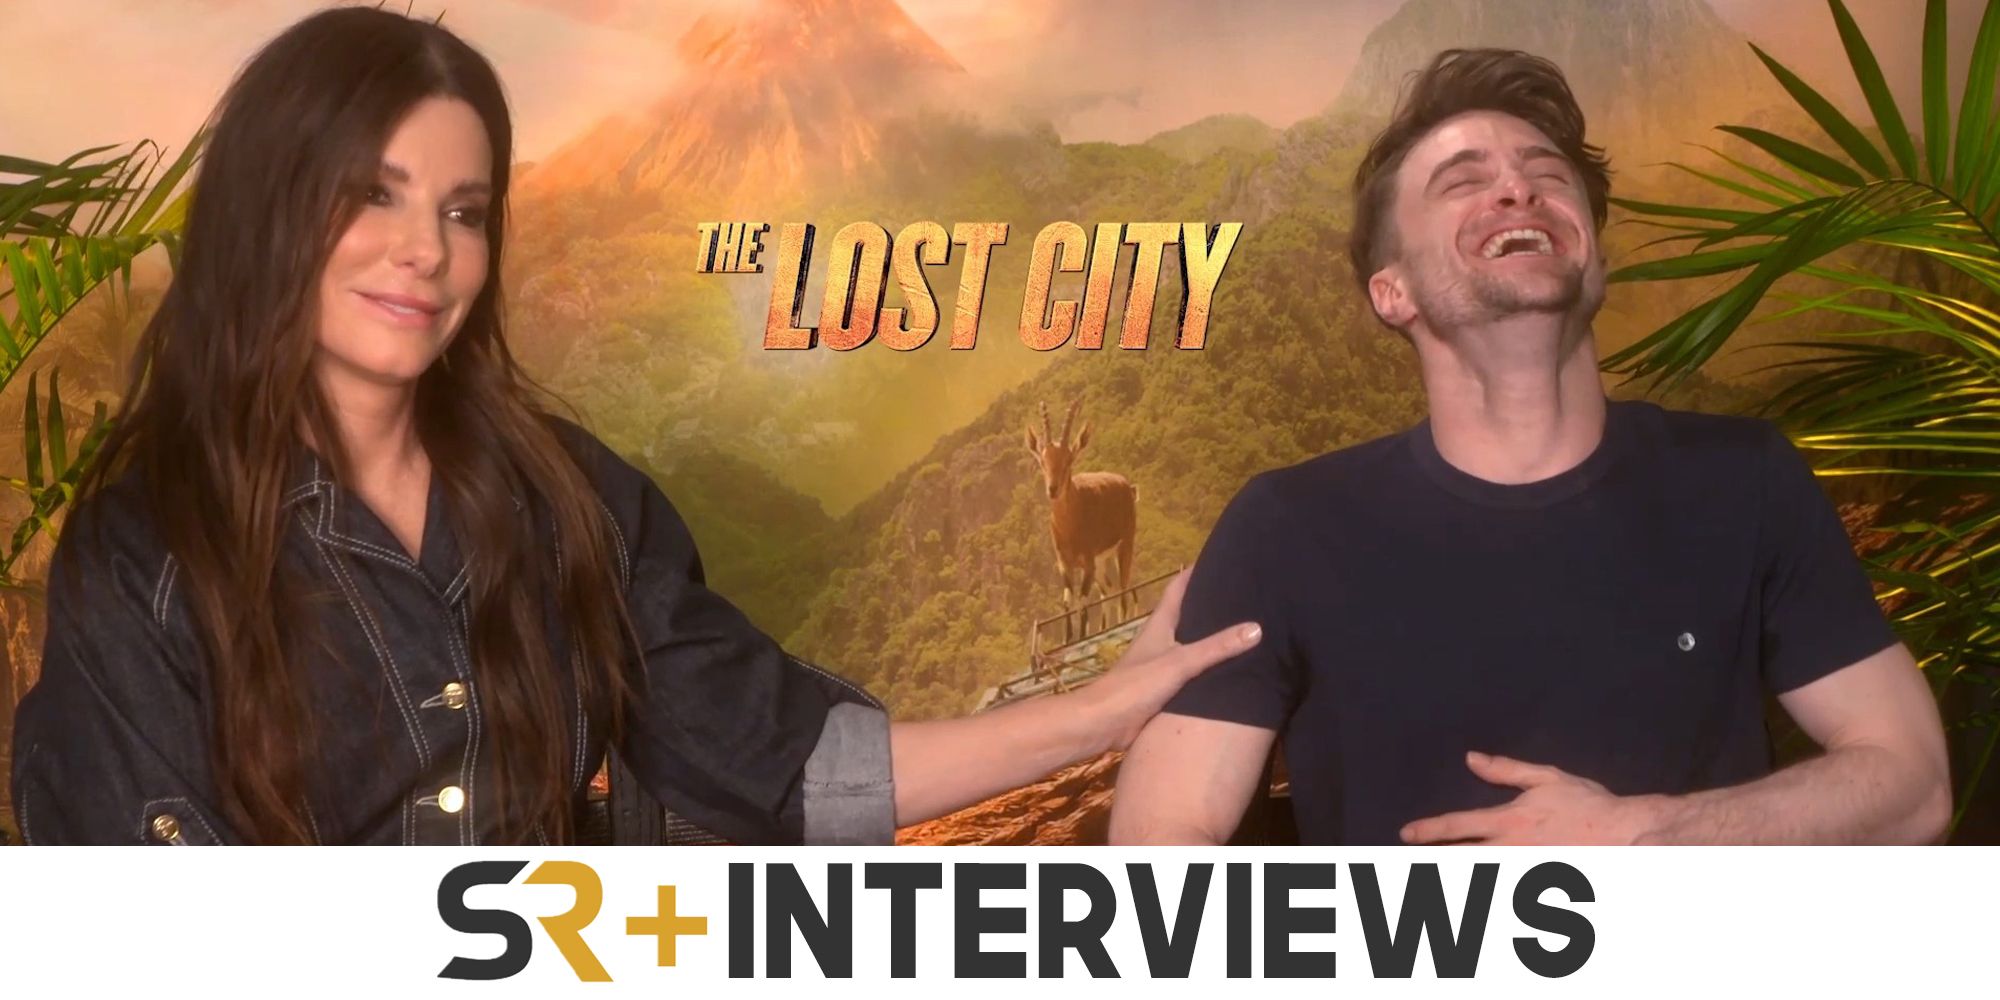 Entrevista a Daniel Radcliffe y Sandra Bullock: La ciudad perdida